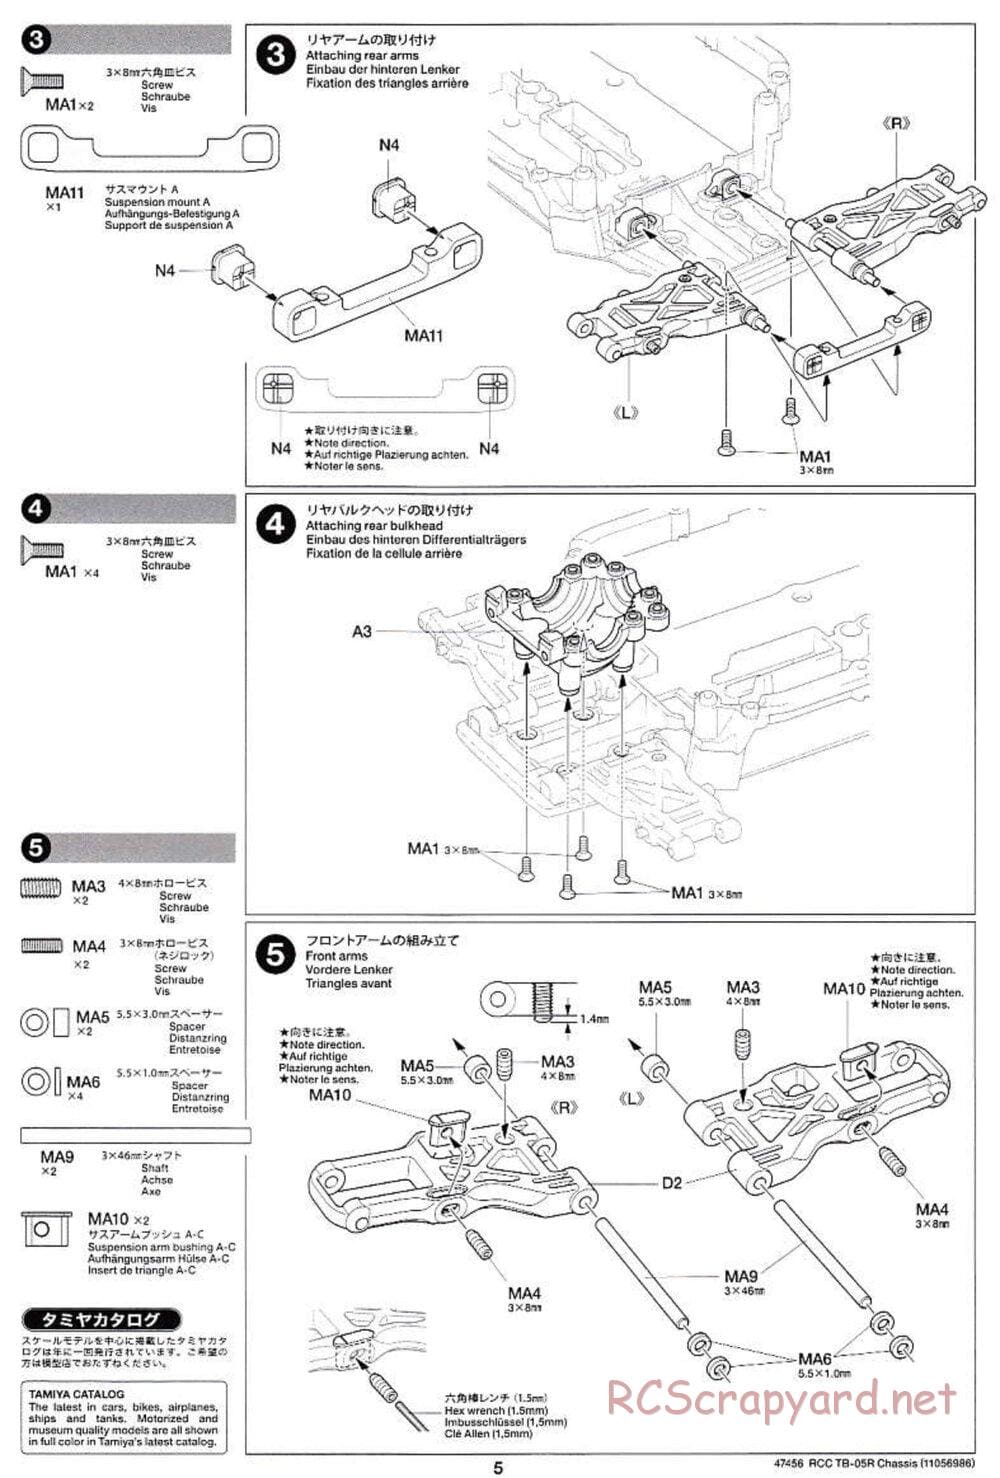 Tamiya - TB-05R Chassis - Manual - Page 5